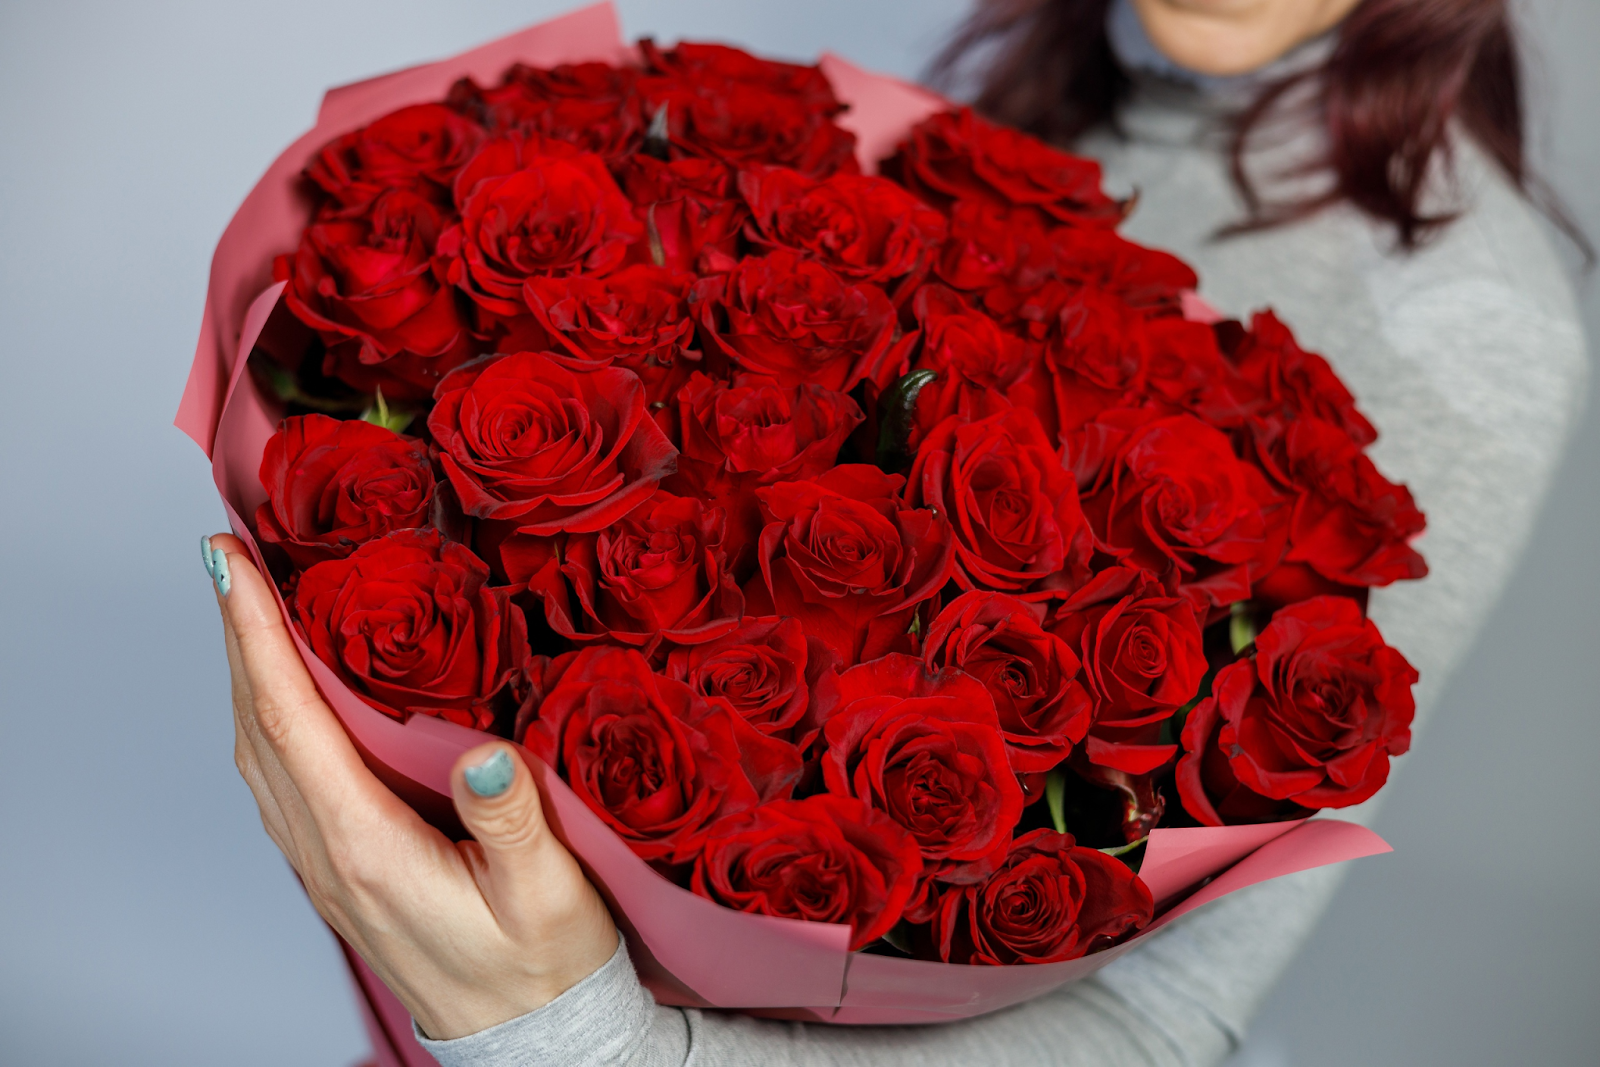 Большой букет роз в руках. Какие цветы подарить девушке на день рождения. Какого цвета лучше подарить розы любимой девушке. Какие цветы подарить женщине на 35 лет.